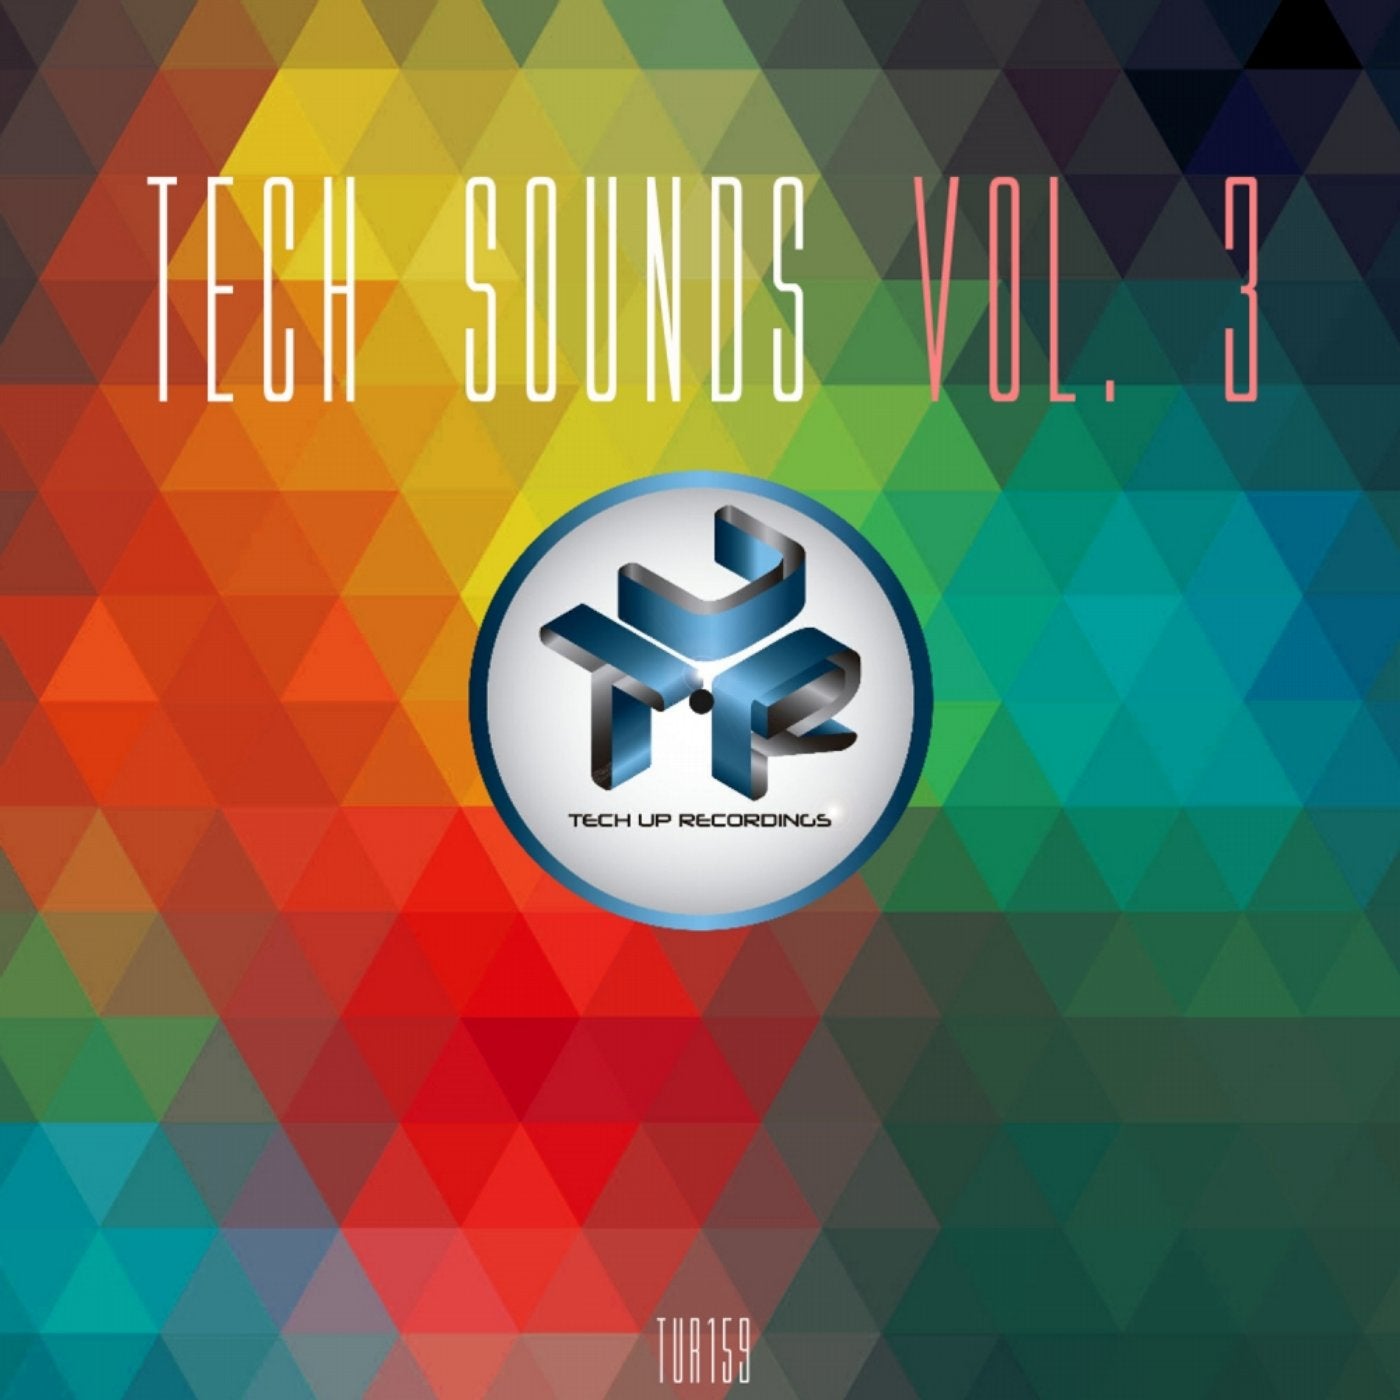 Tech Sounds, Vol. 3